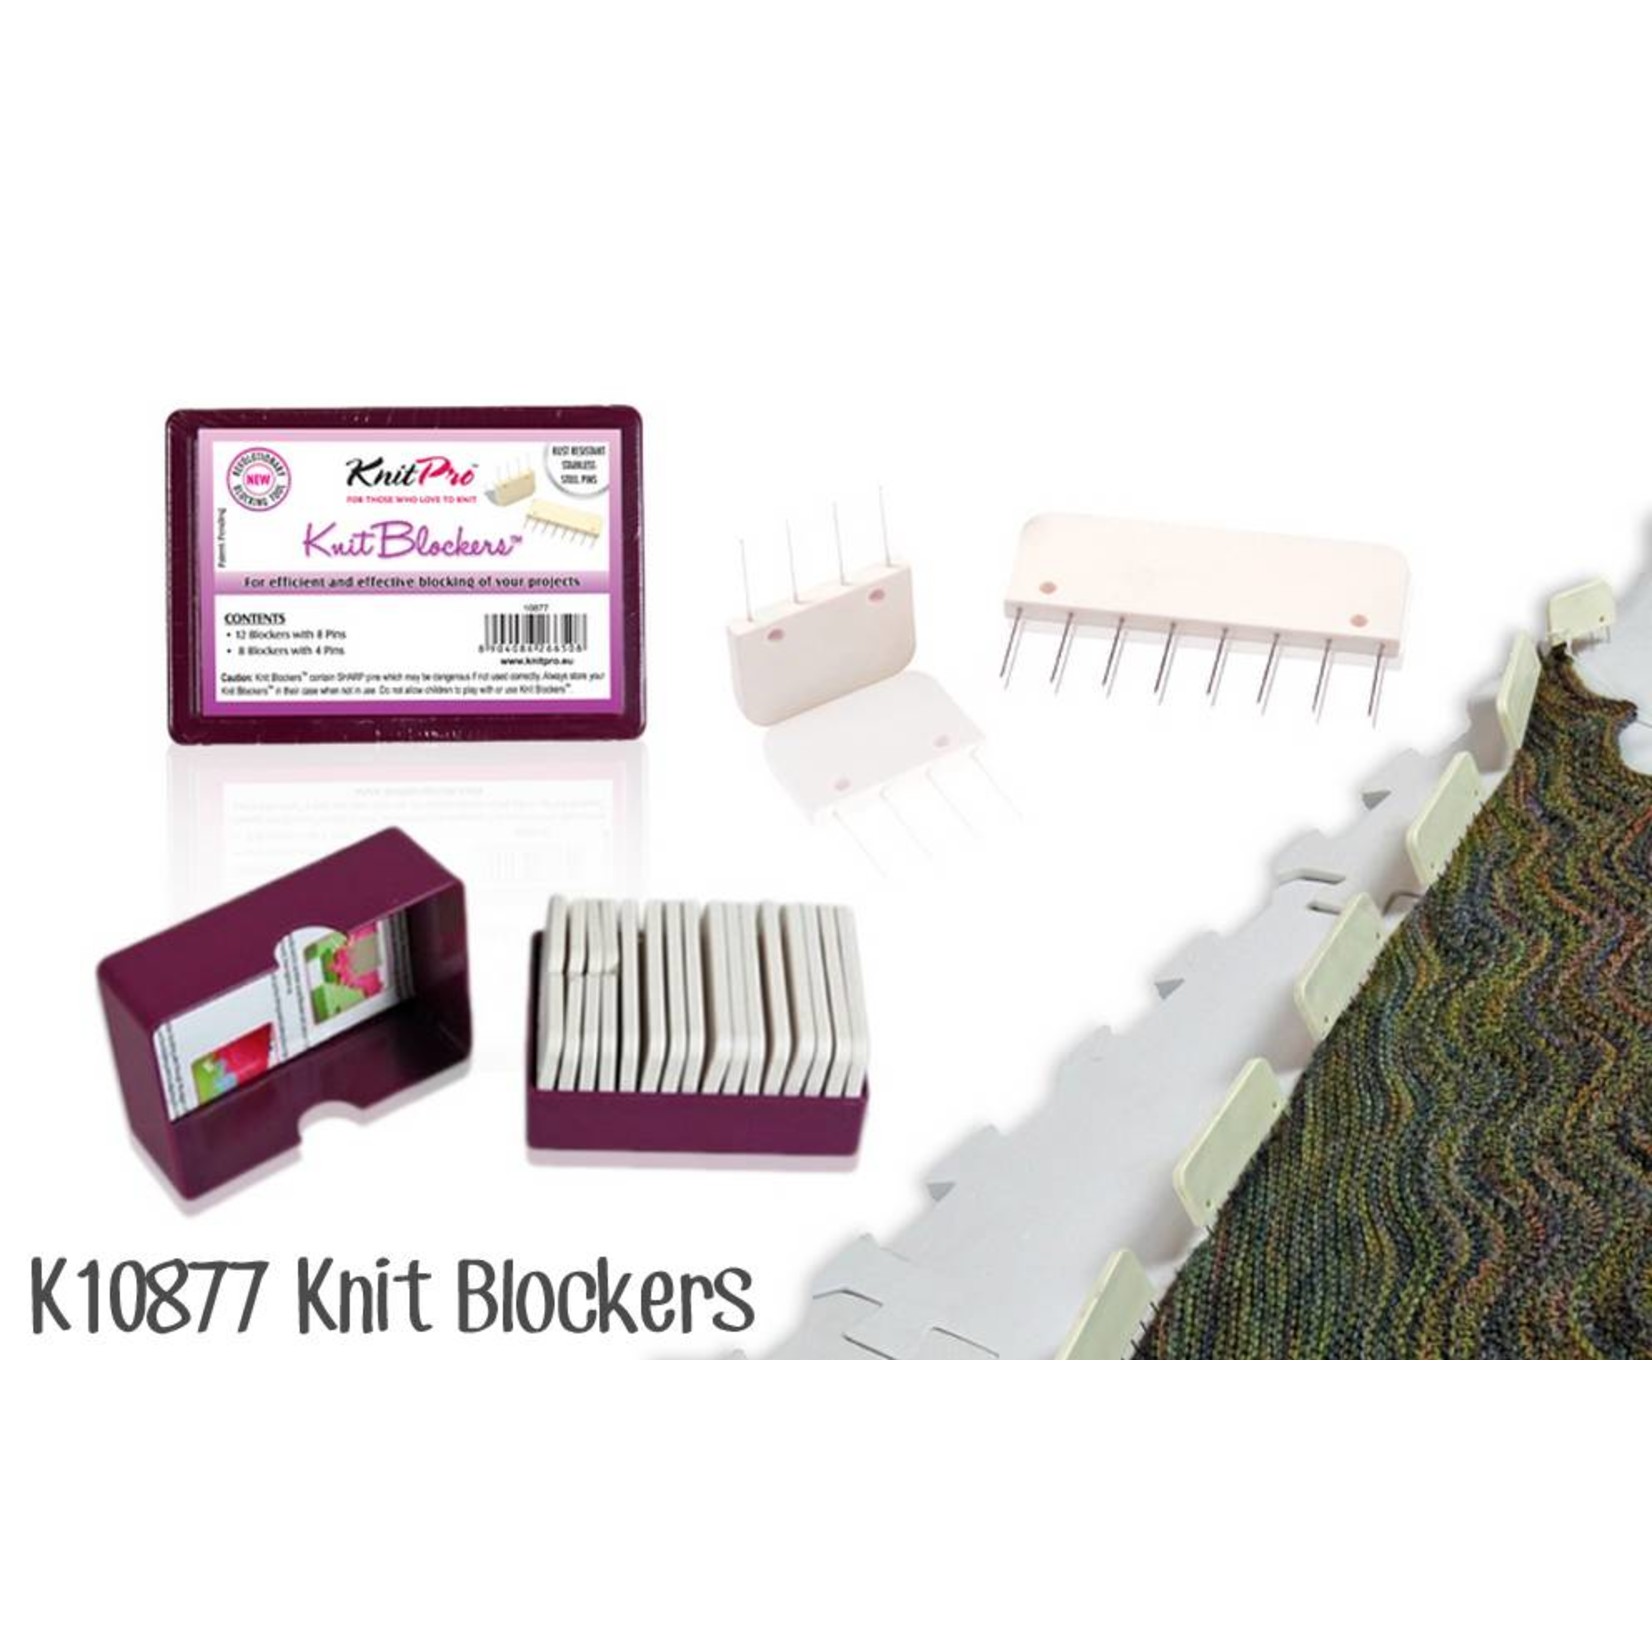 Knitpro Knit Blockers